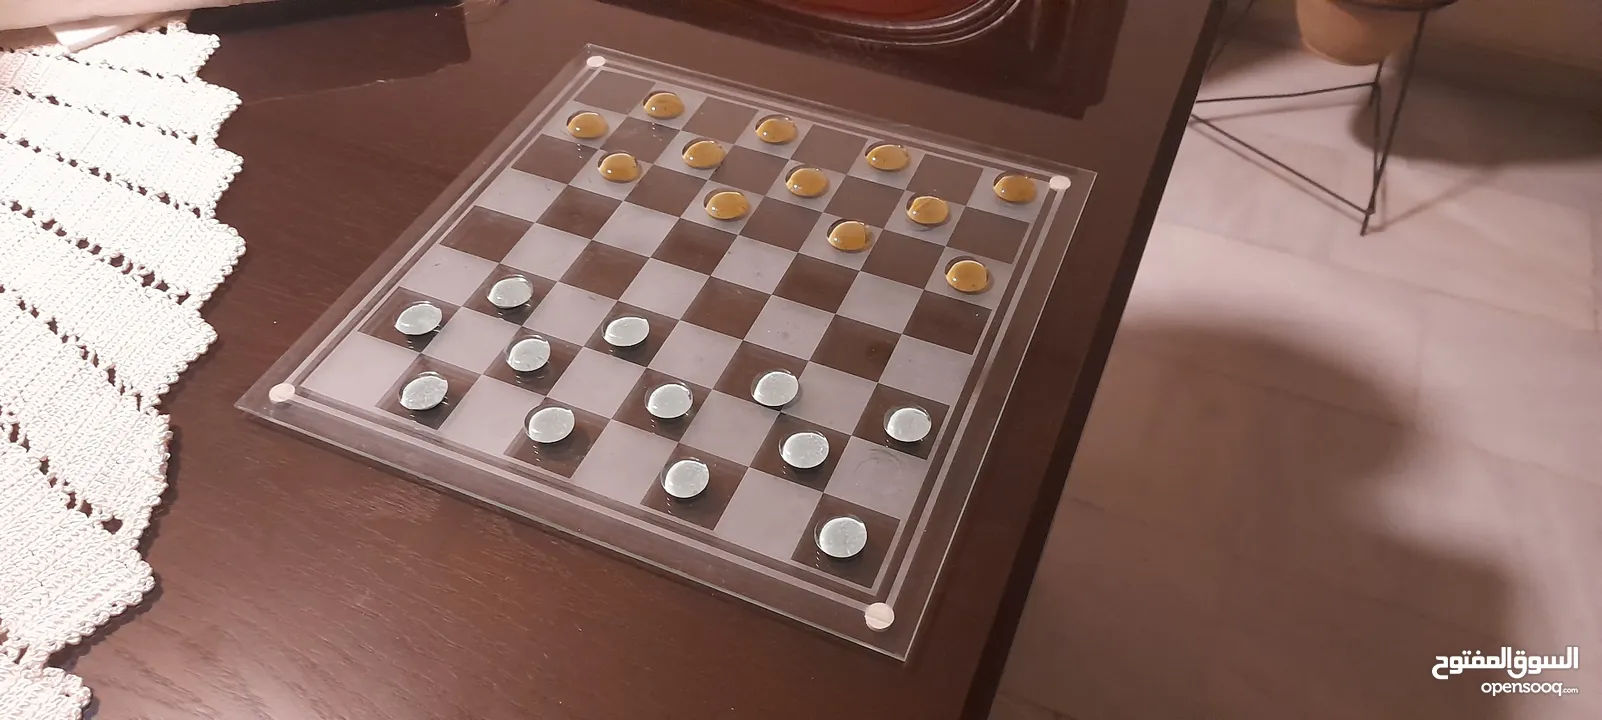 Glass Chess & Checkers  شطرنج و تشيكرز زجاجي